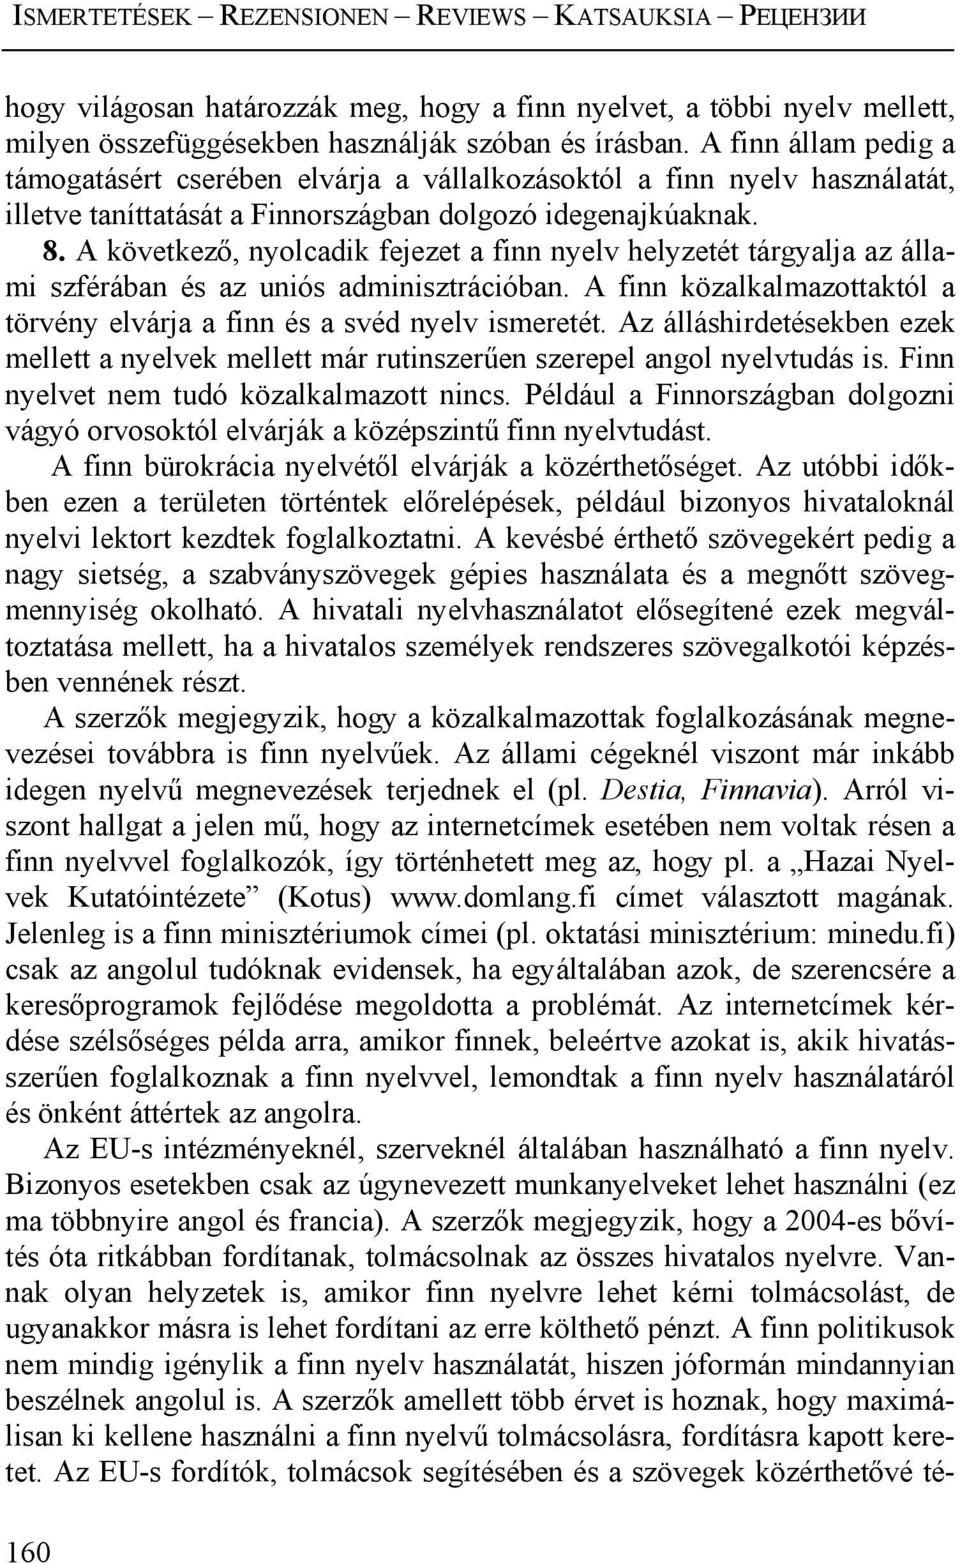 A következő, nyolcadik fejezet a finn nyelv helyzetét tárgyalja az állami szférában és az uniós adminisztrációban. A finn közalkalmazottaktól a törvény elvárja a finn és a svéd nyelv ismeretét.